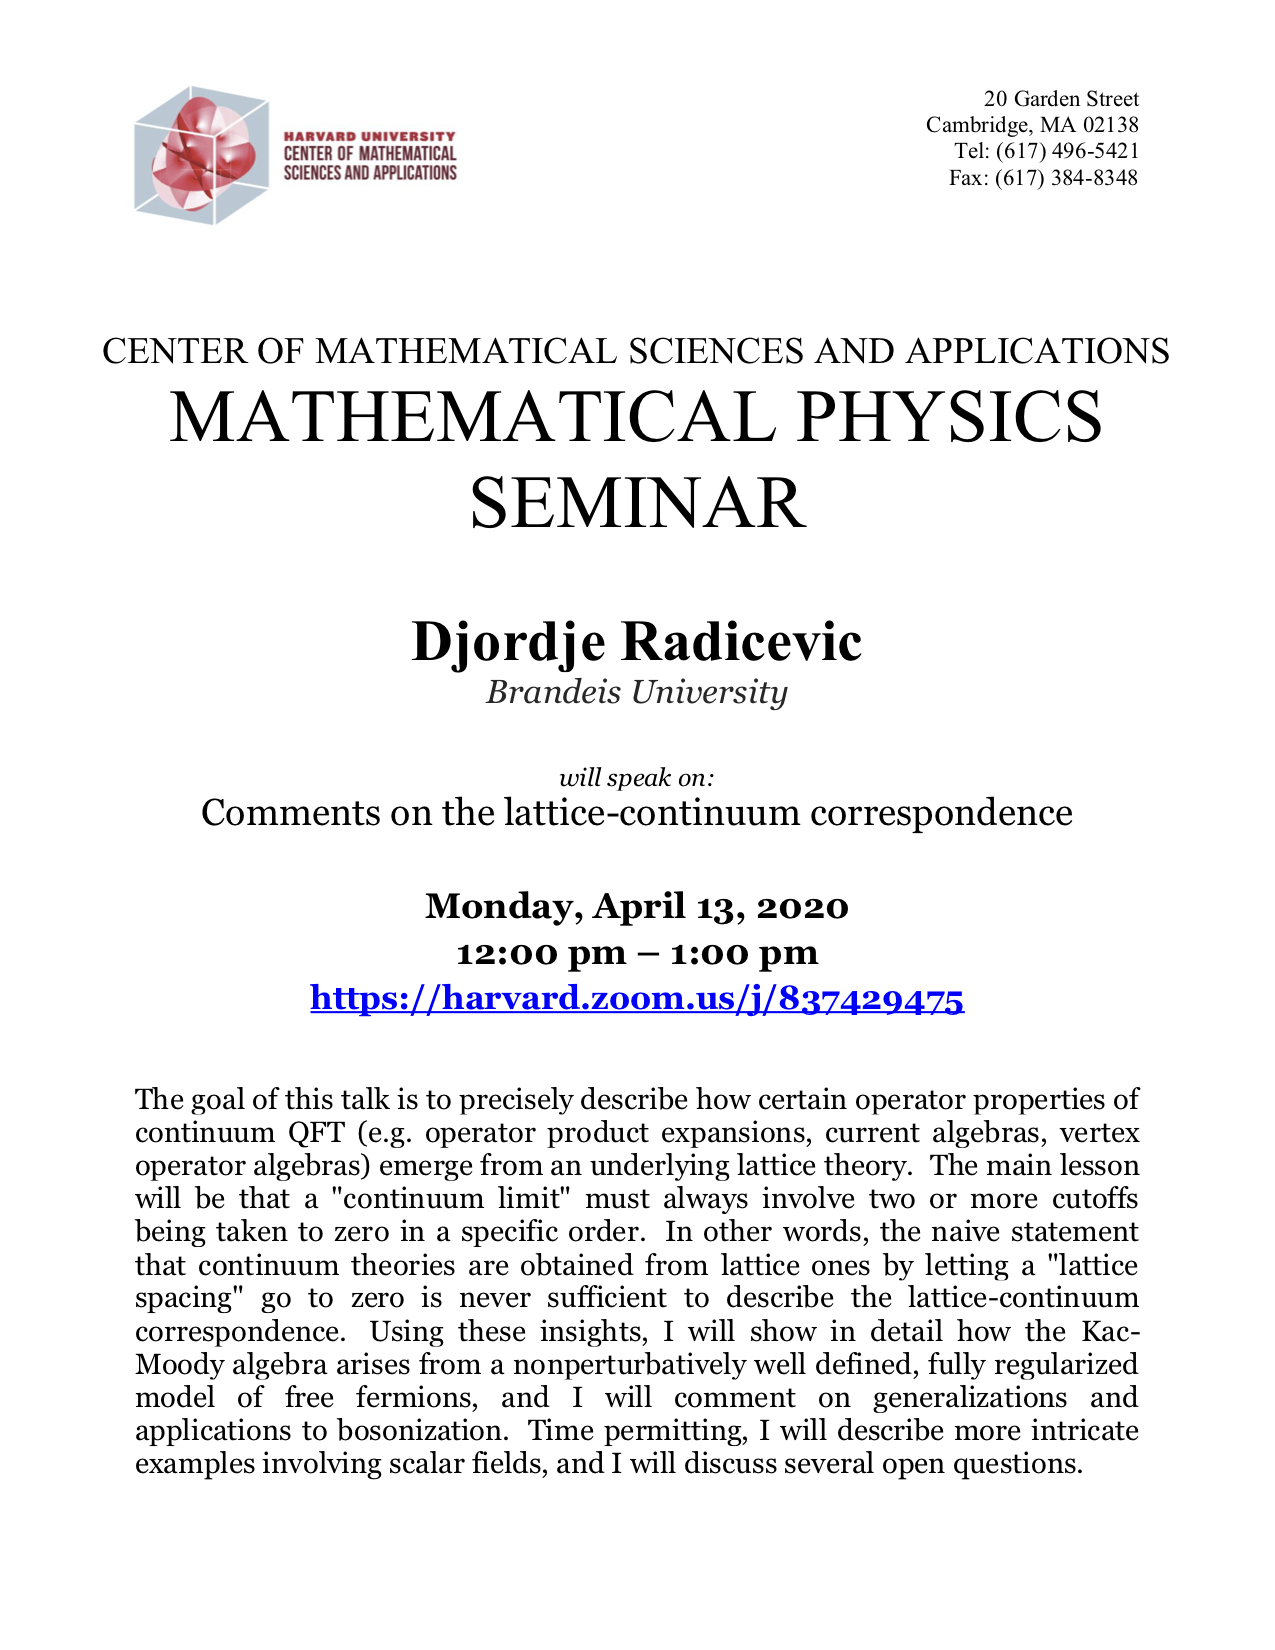 CMSA-Mathematical-Physics-04.13.20